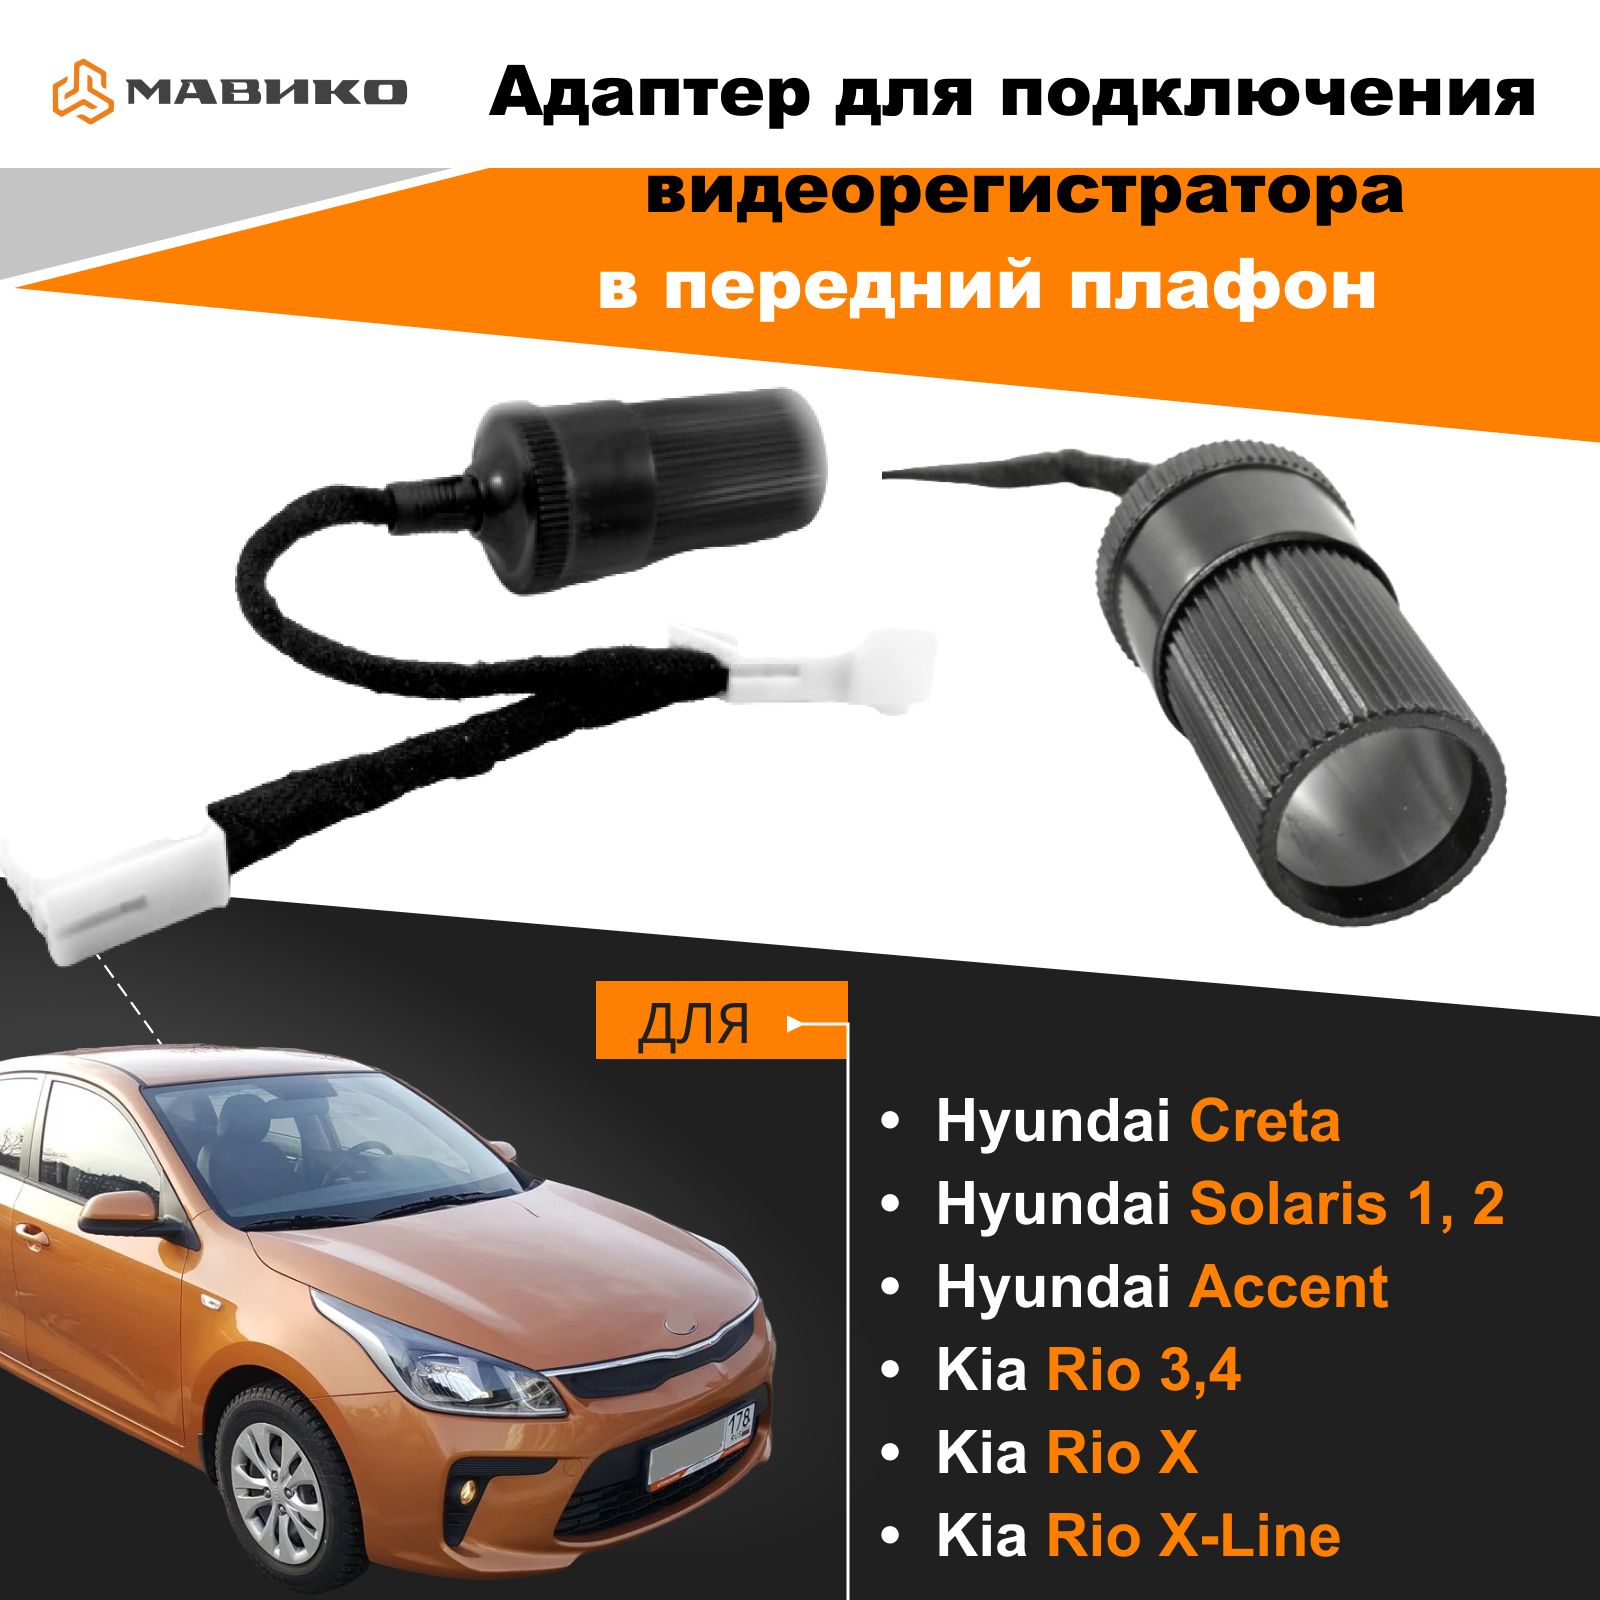 Сигнализация для Hyundai Solaris, автозапуск, установка с сохранением гарантии